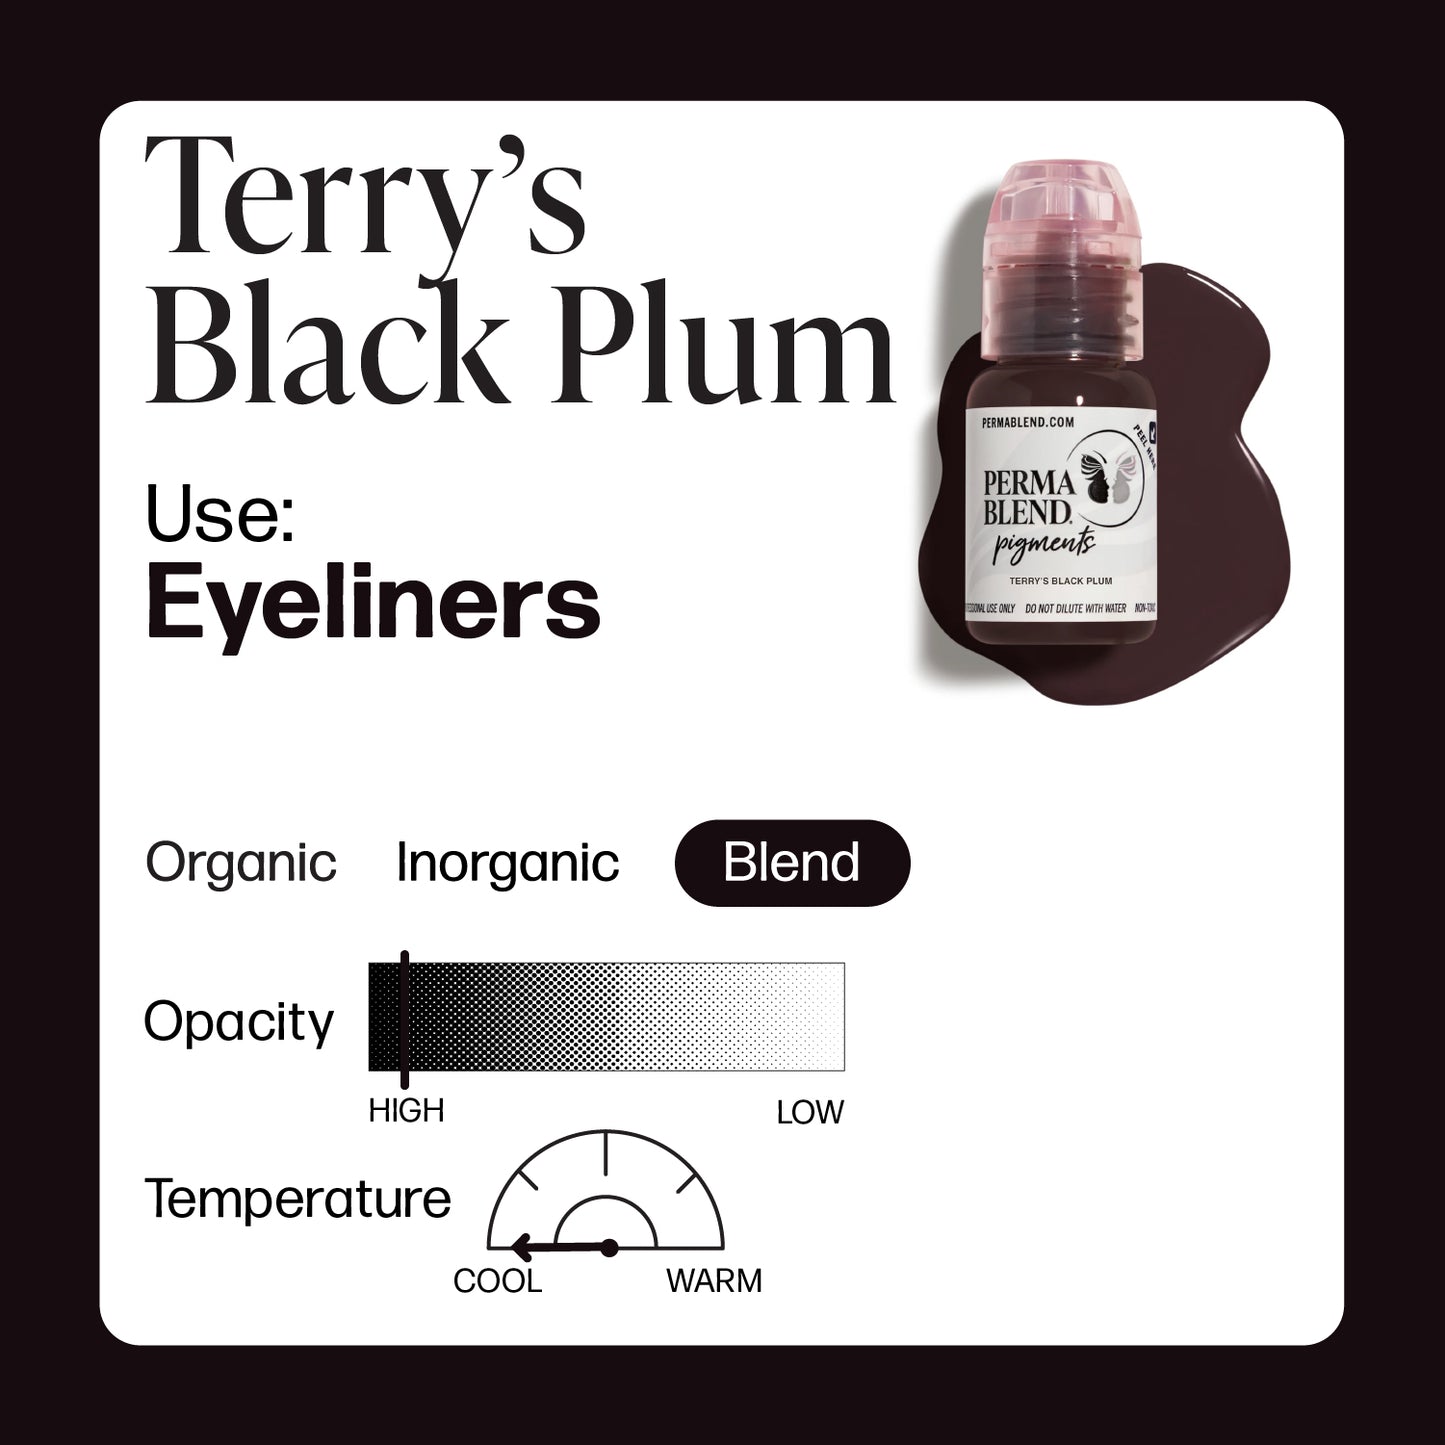 Terry's Black Plum